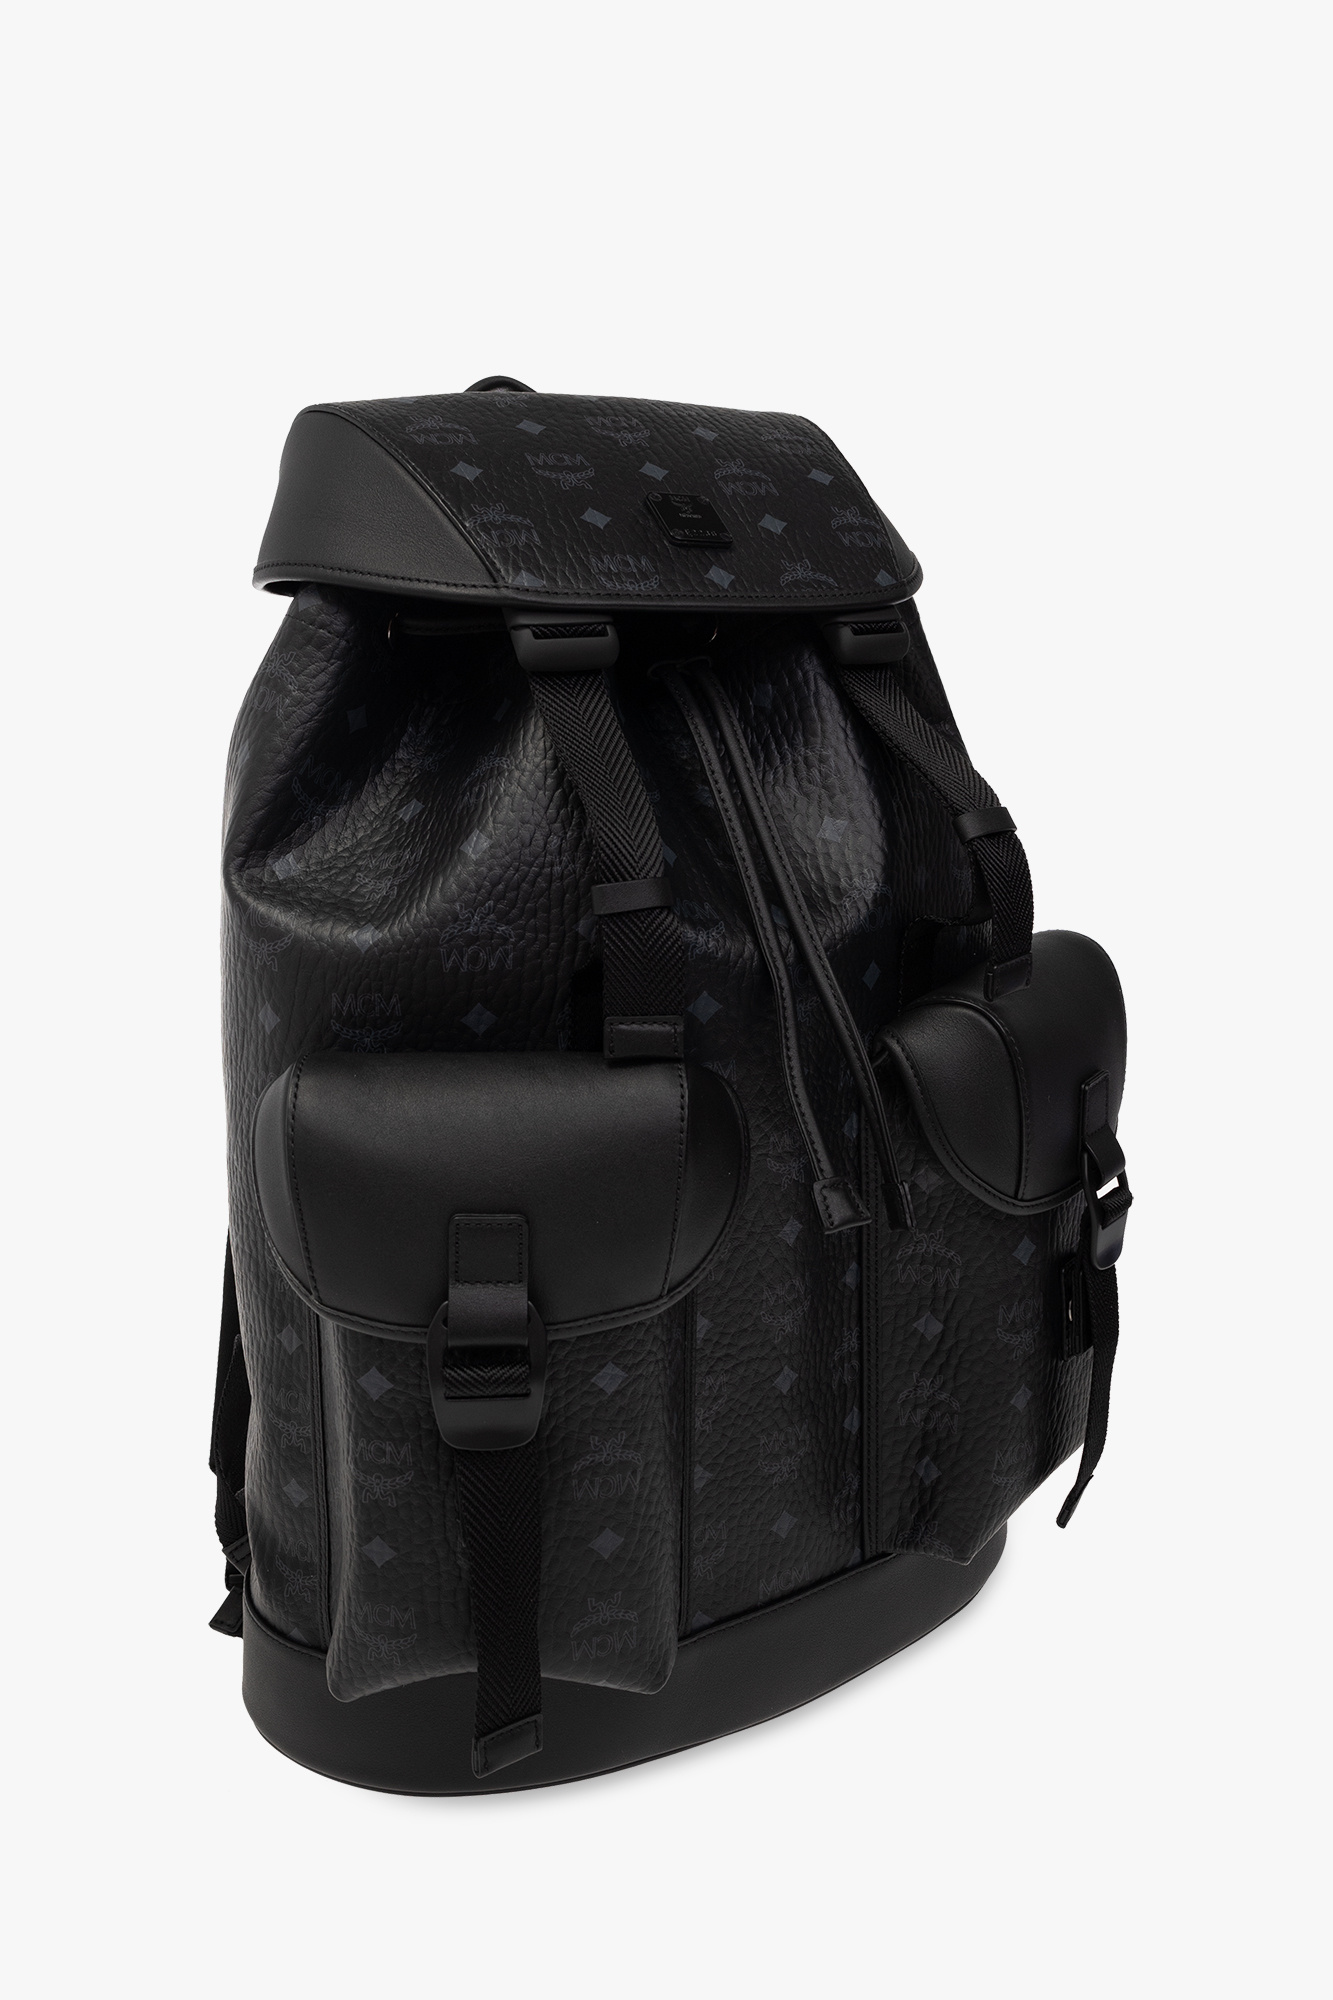 MCM Black Leather Front Pocket Flap Backpack MCM